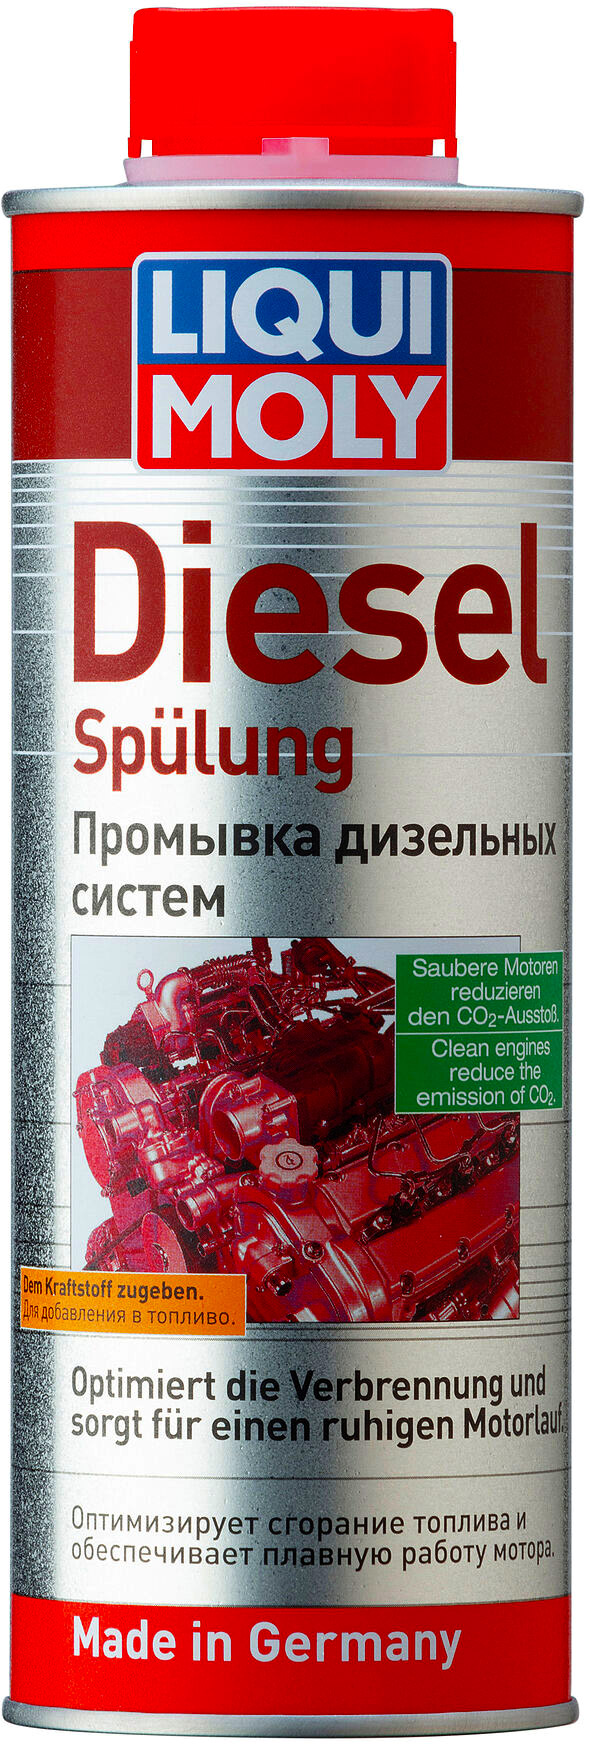 2509 Liqui Moly Diesel Spulung Промывка дизельных систем 0.5л